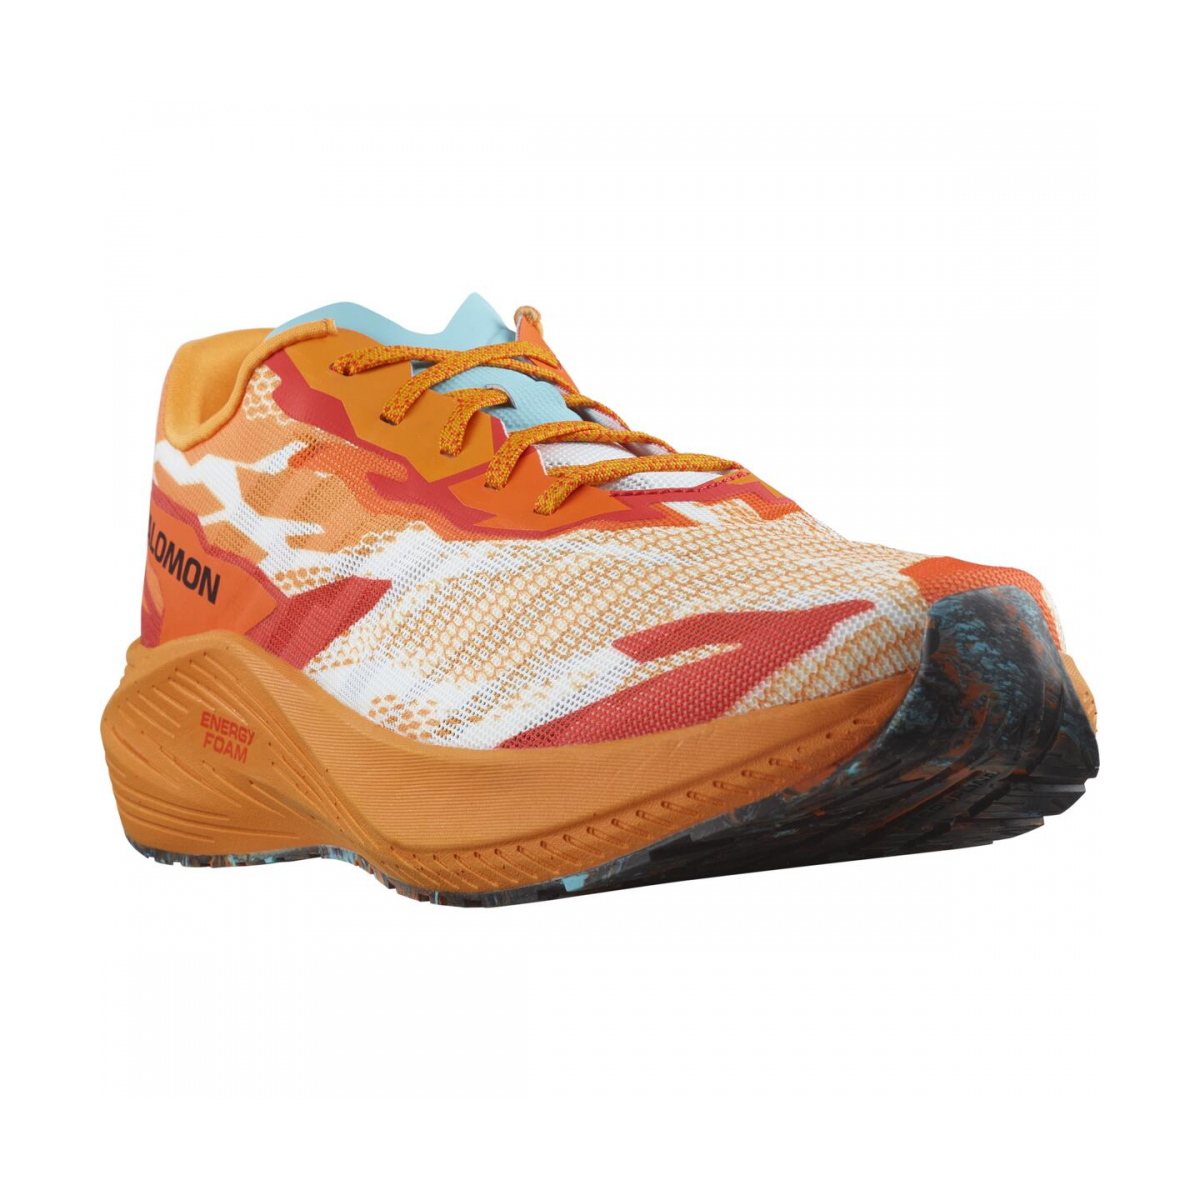 SALOMON AERO VOLT running shoes - orange/red